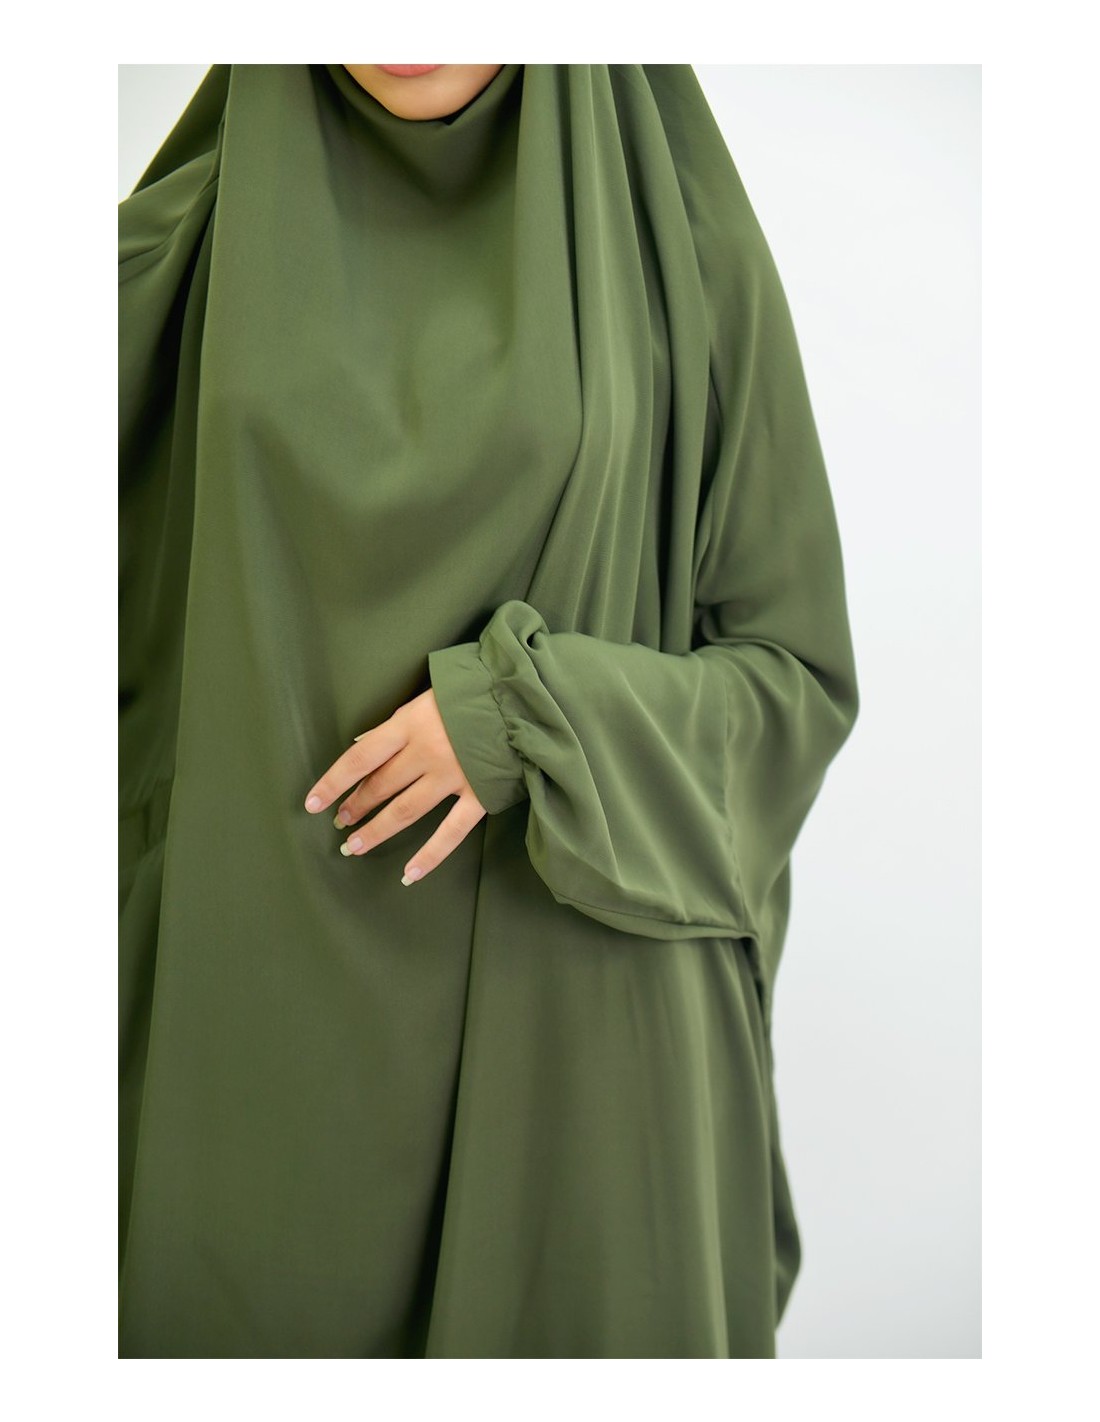 Jilbab houda capullo con bolsillos